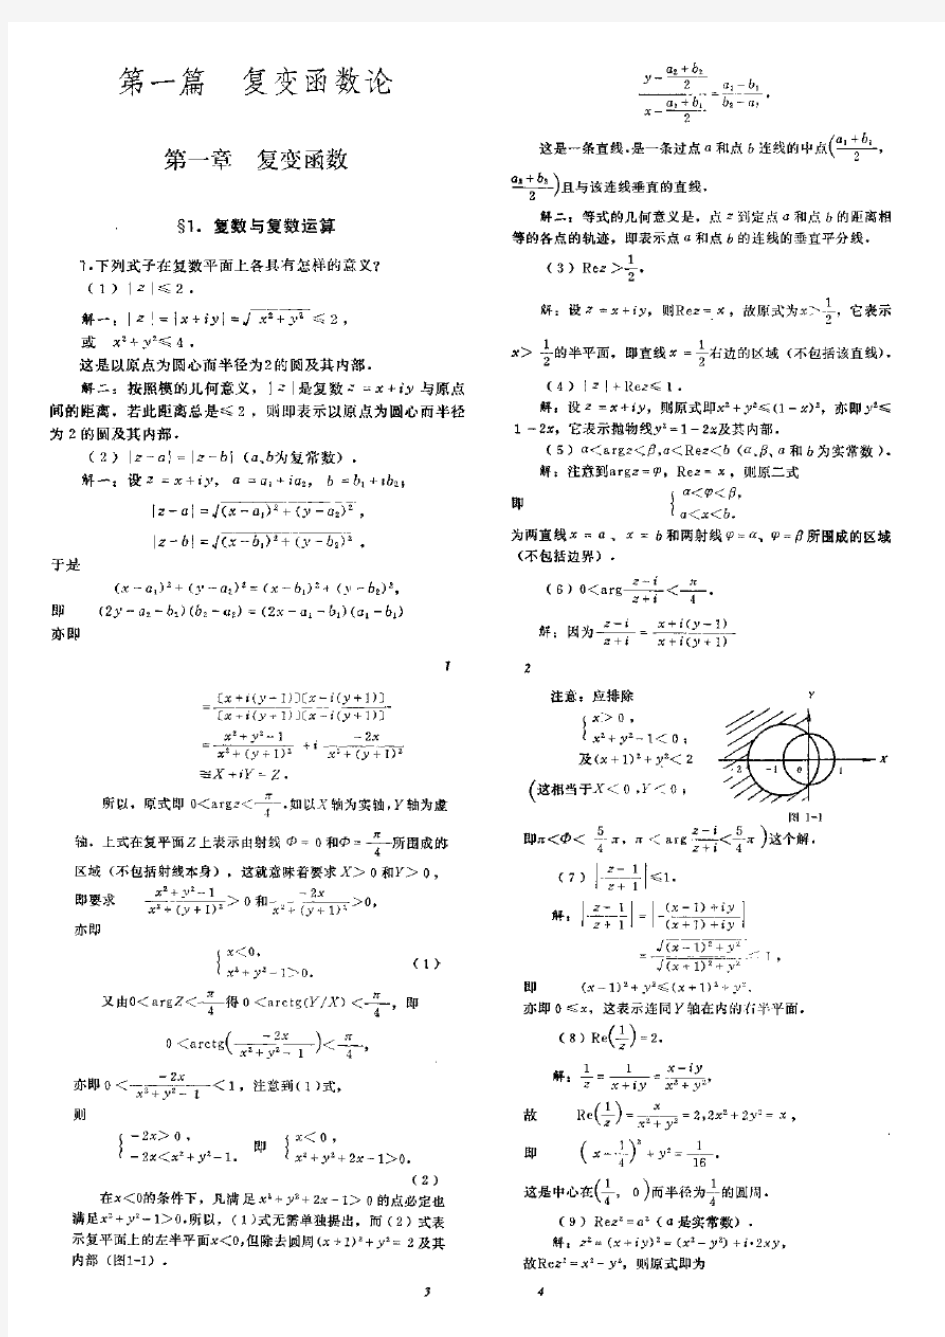 数学物理方法答案_梁昆淼编_(第四版)